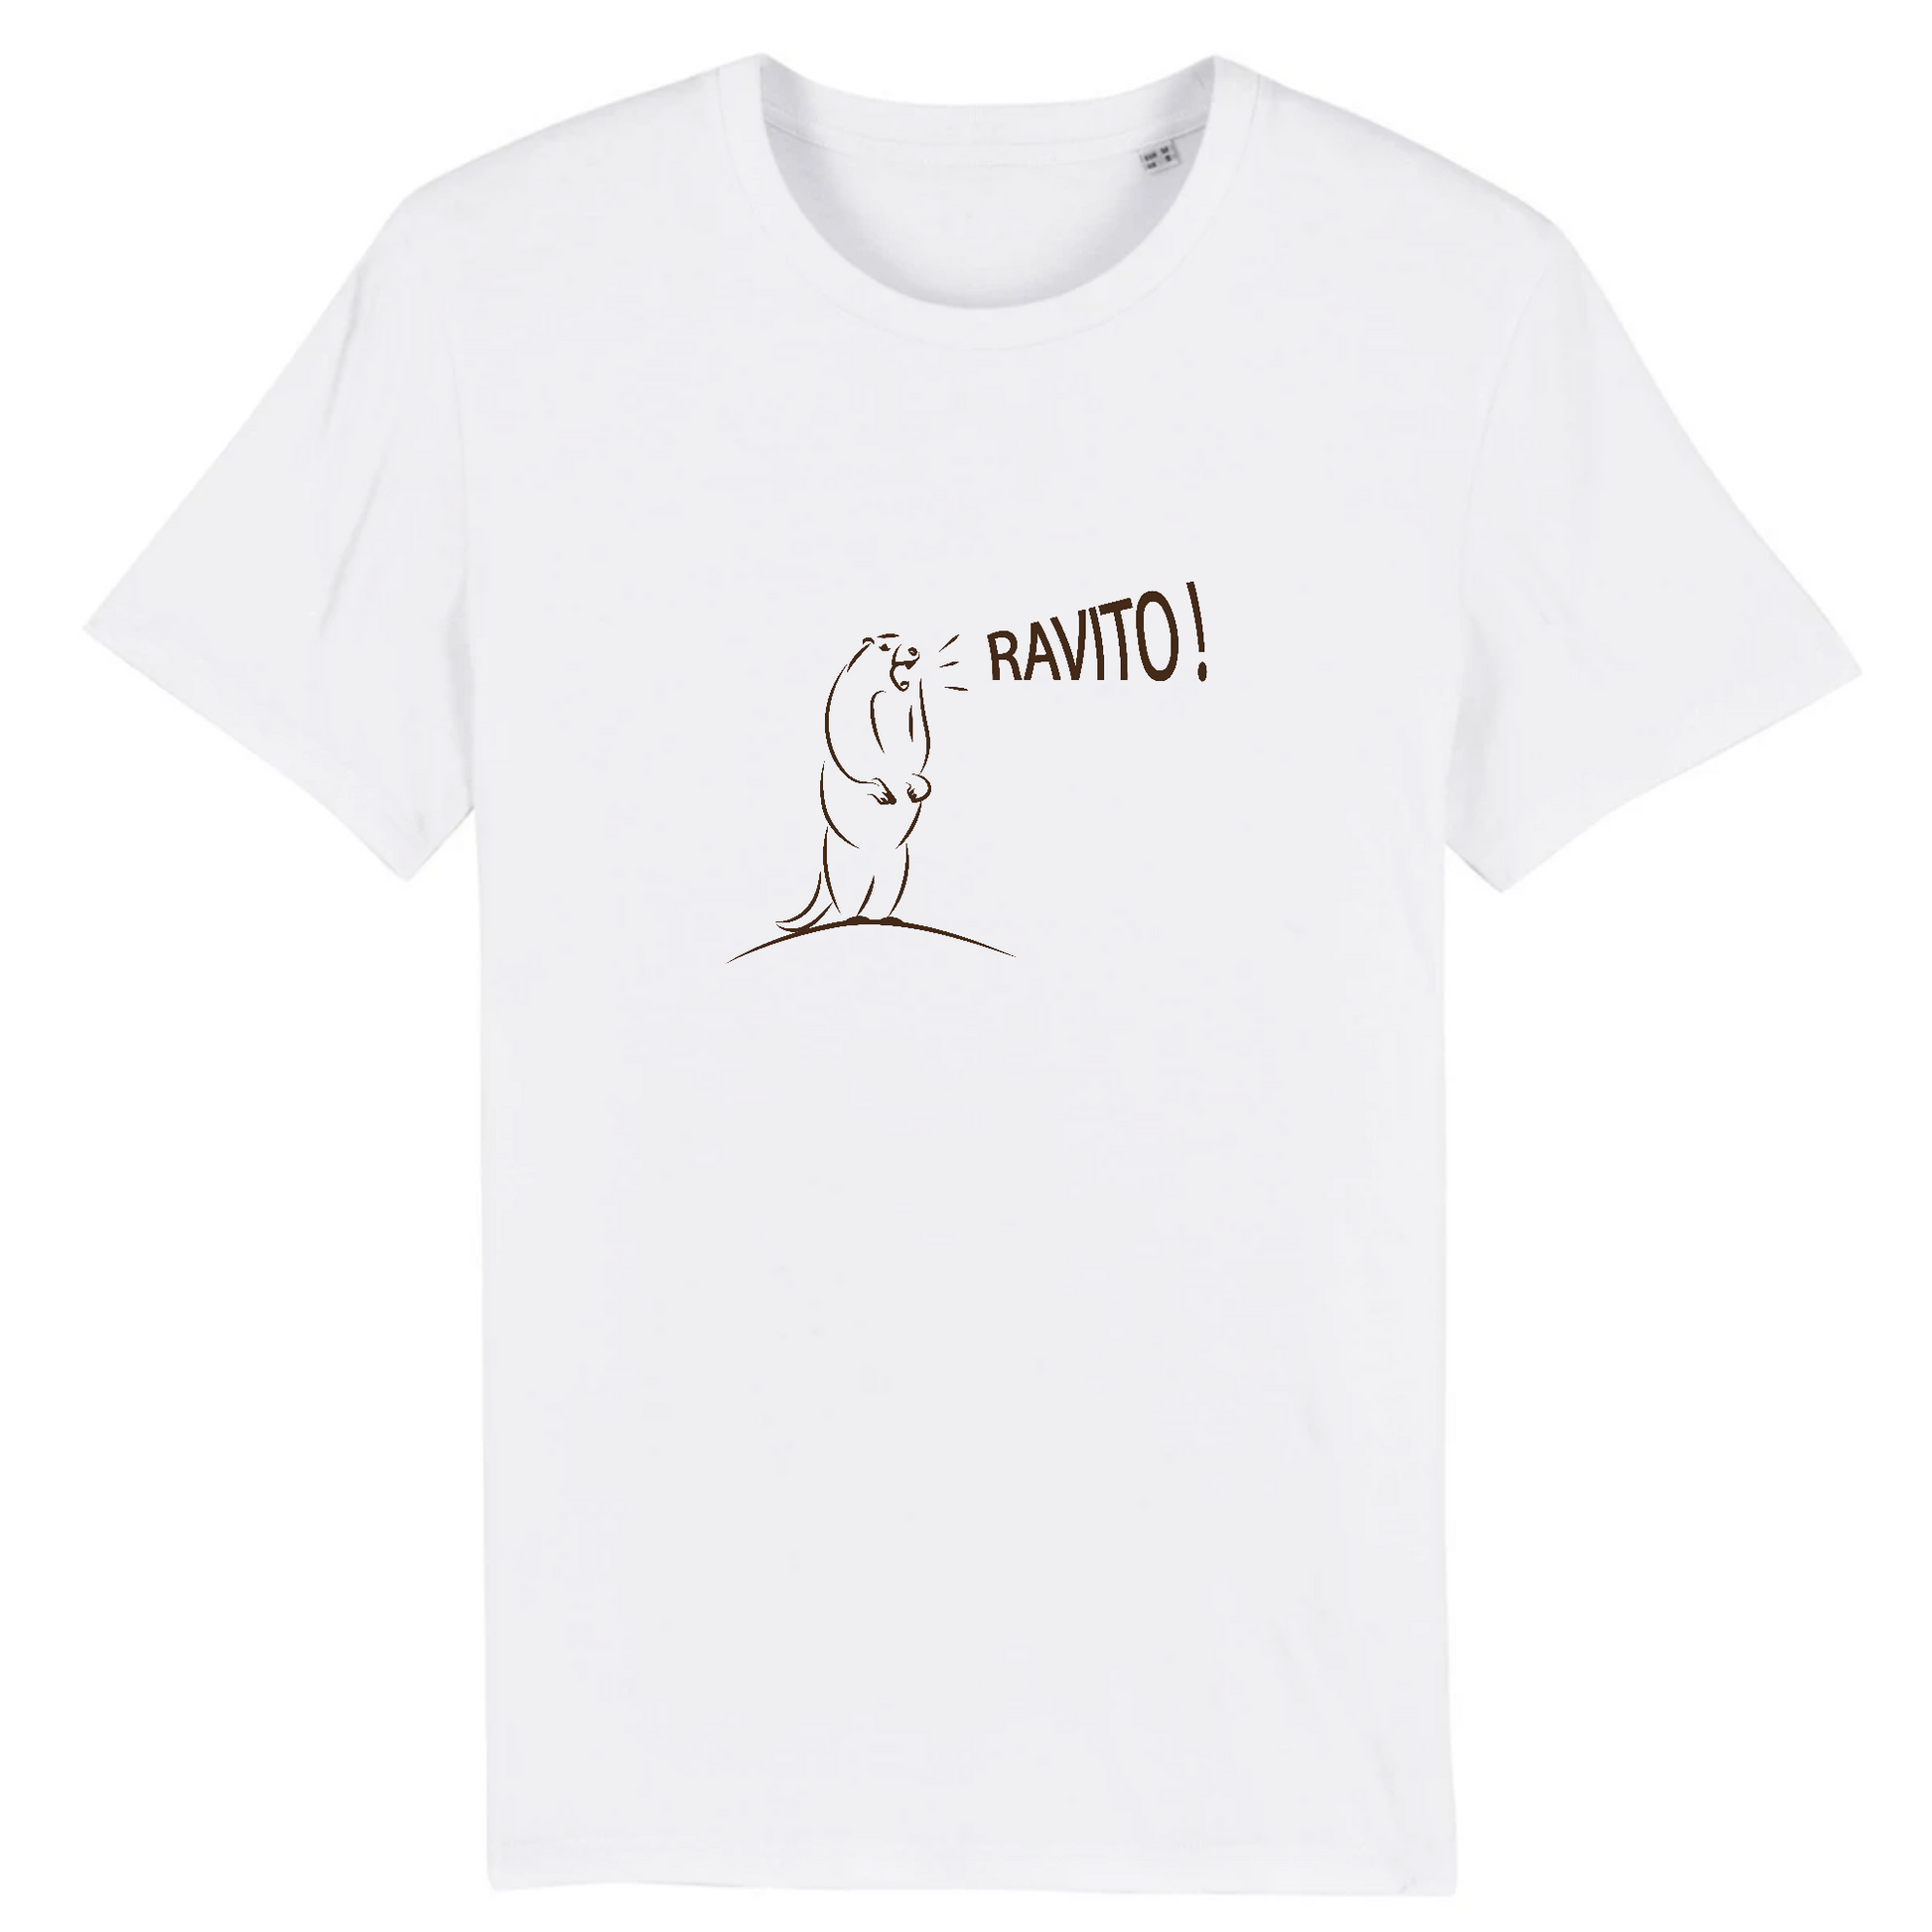 Blanc - Design humoristique de la marmotte criant Ravito !